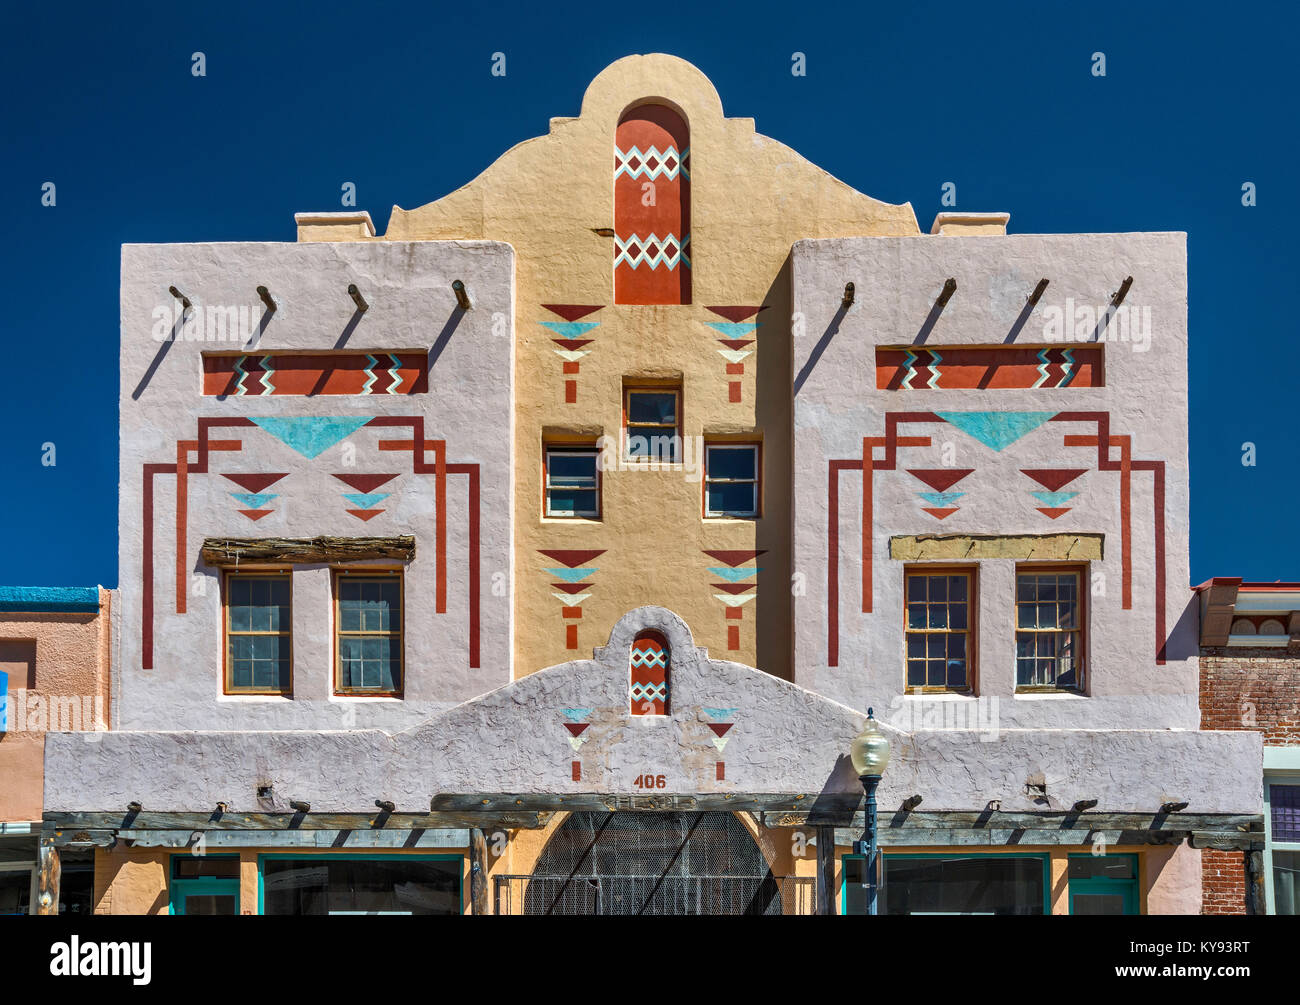 El Sol teatro, cinema storico edificio con motivi ispirati dai disegni indiani a Bullard Street nella città di argento, Nuovo Messico, STATI UNITI D'AMERICA Foto Stock